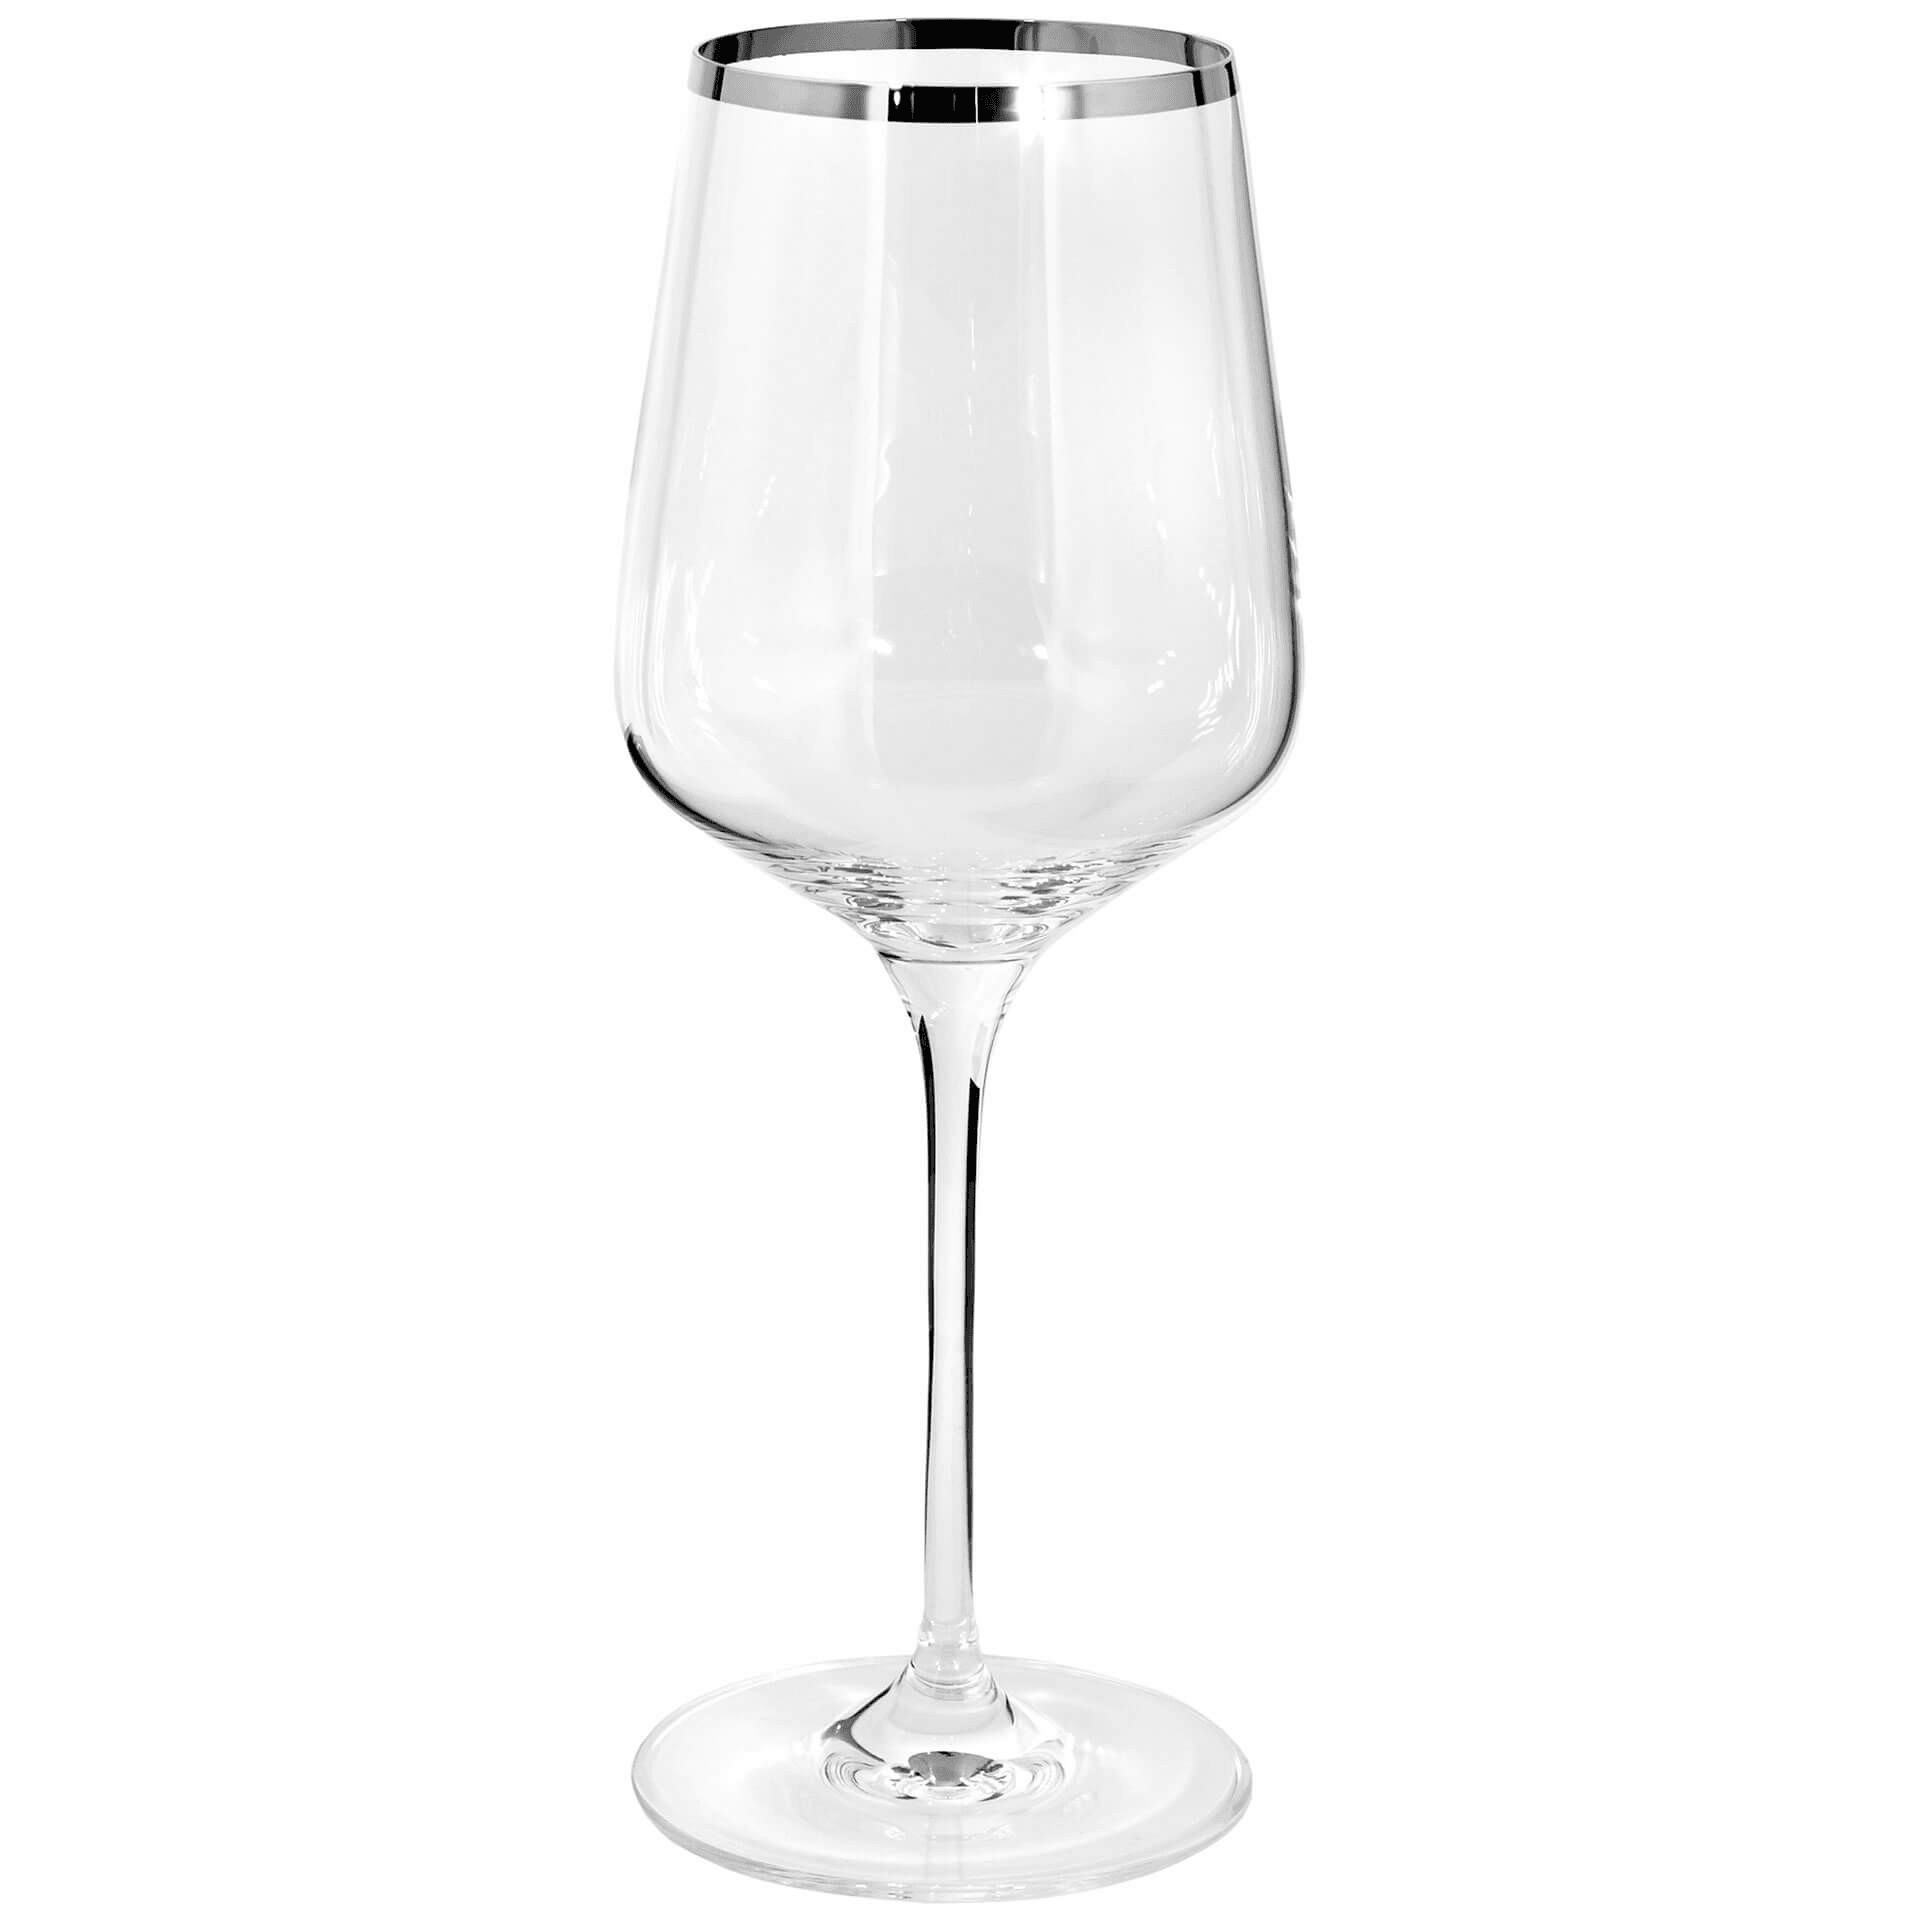 Fink Living PLATINUM Weinglas Rotweinglas mundgeblasen 650 ml - HomeDesign Knaus wir schaffen Inspirationen 